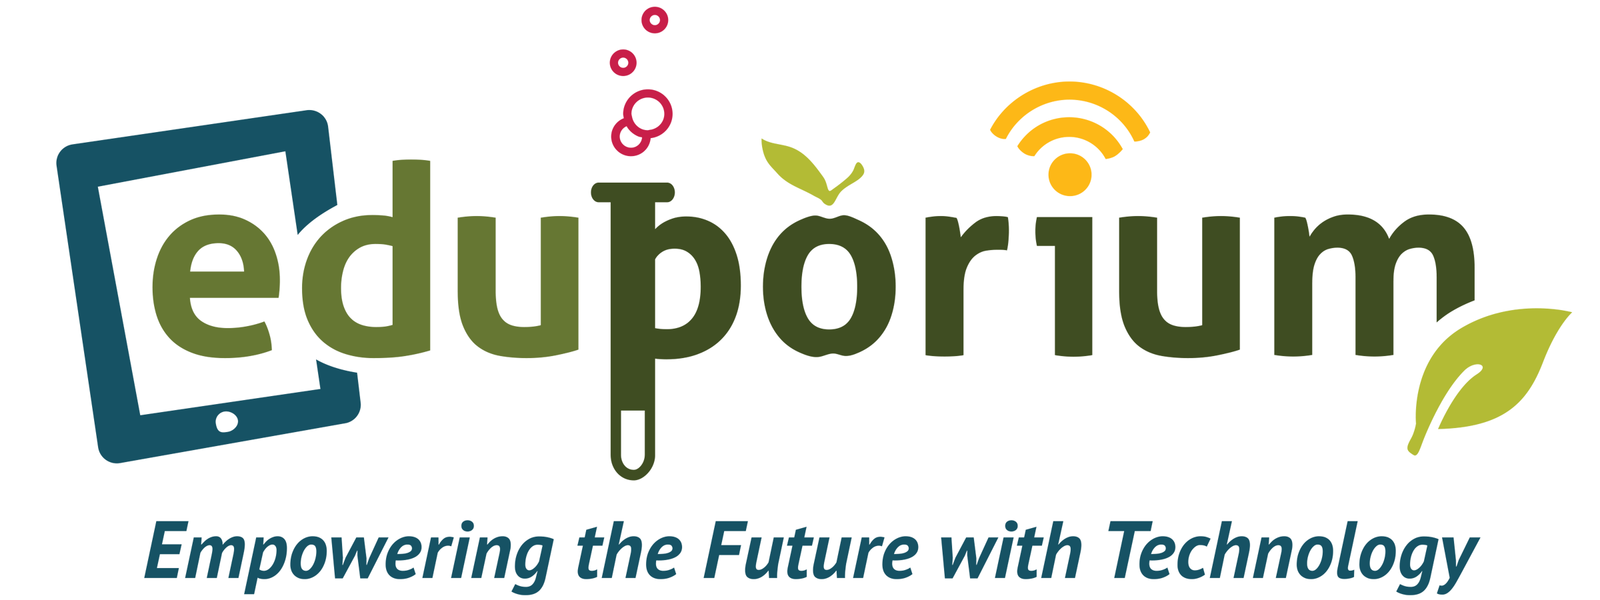 the eduporium logo